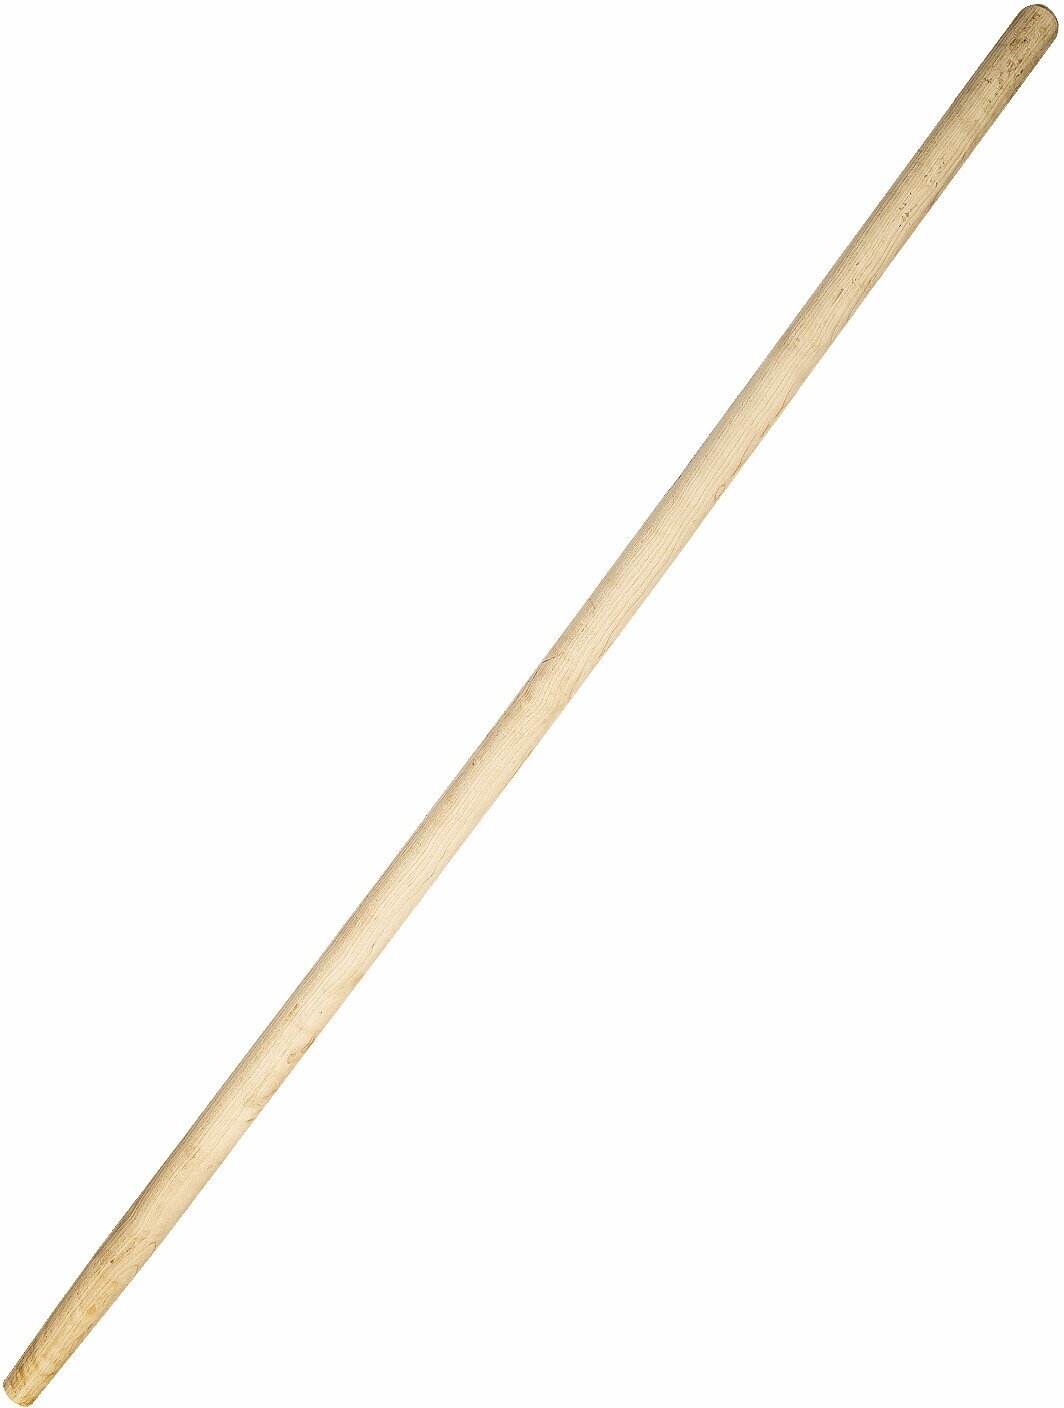 Черенок высшего сорта для лопаты, граблей и другого садового инструмента, длина 1.2 метра, диаметр 40 мм, из сухой березы, прочный. Цена указана за 2 черенка.